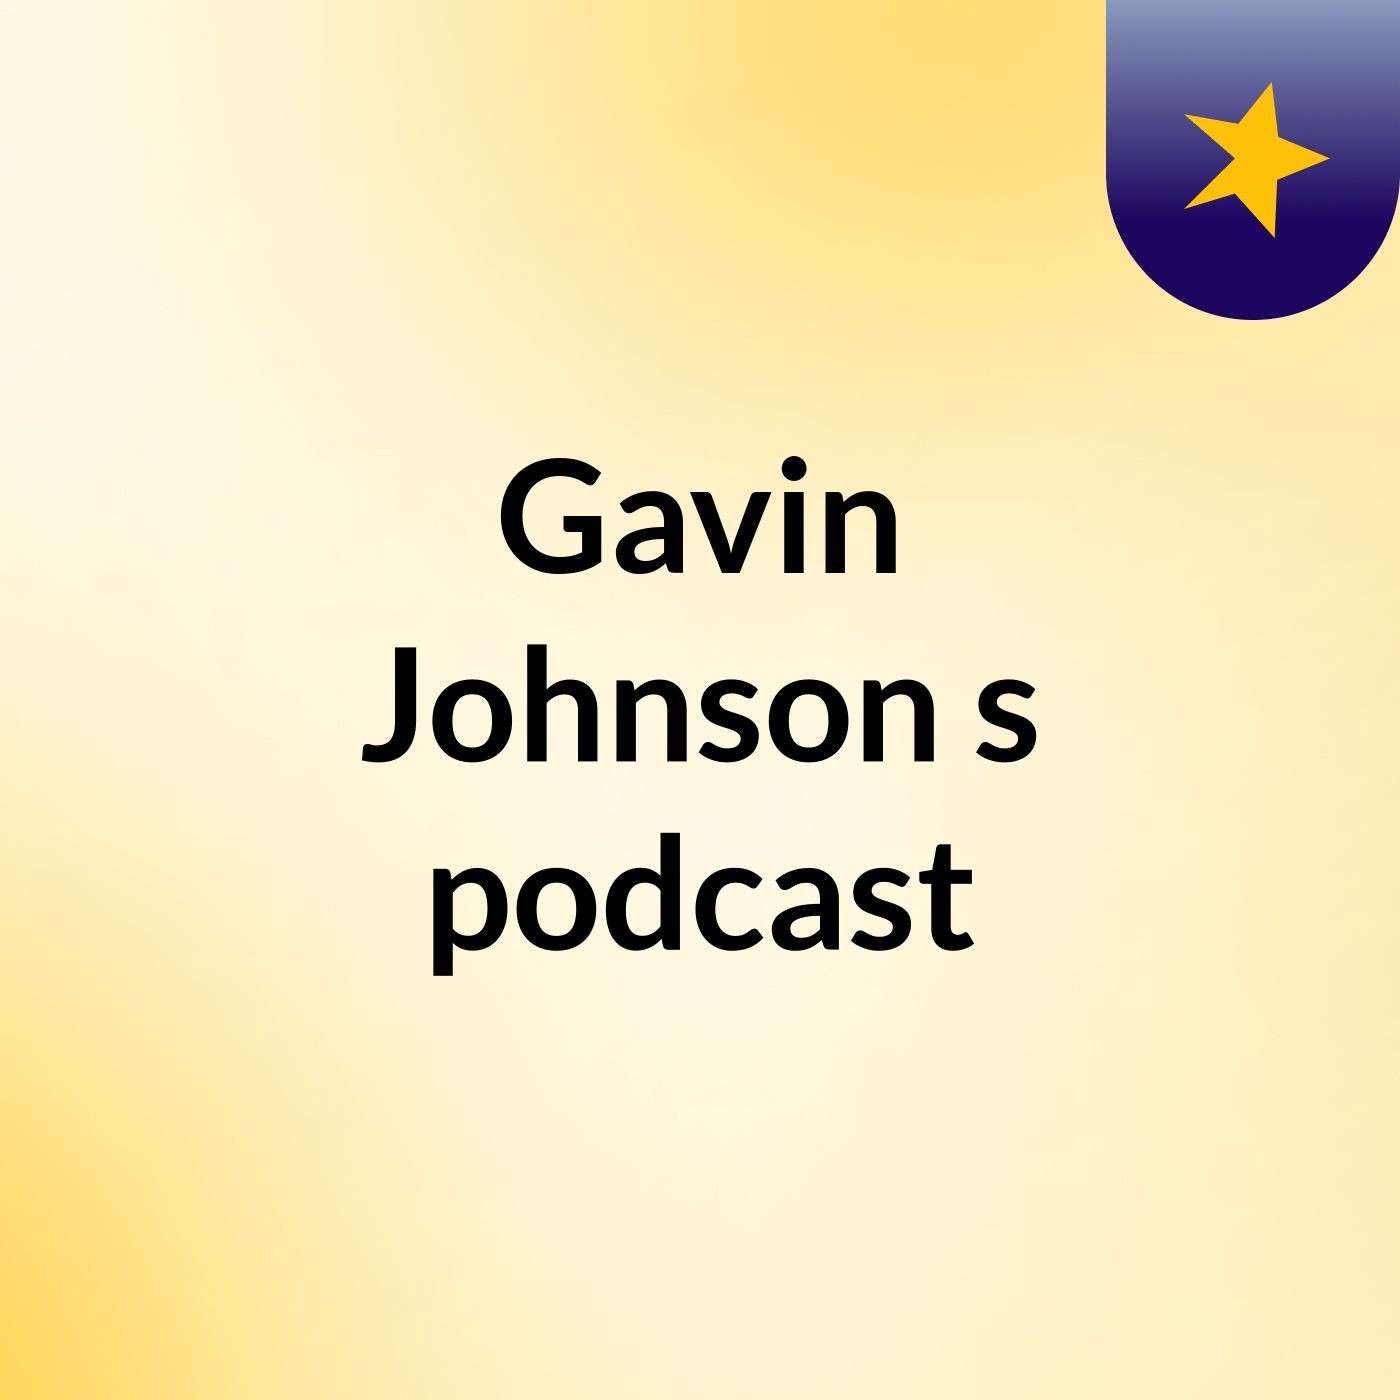 Episode 4 - Gavin Johnson's podcast